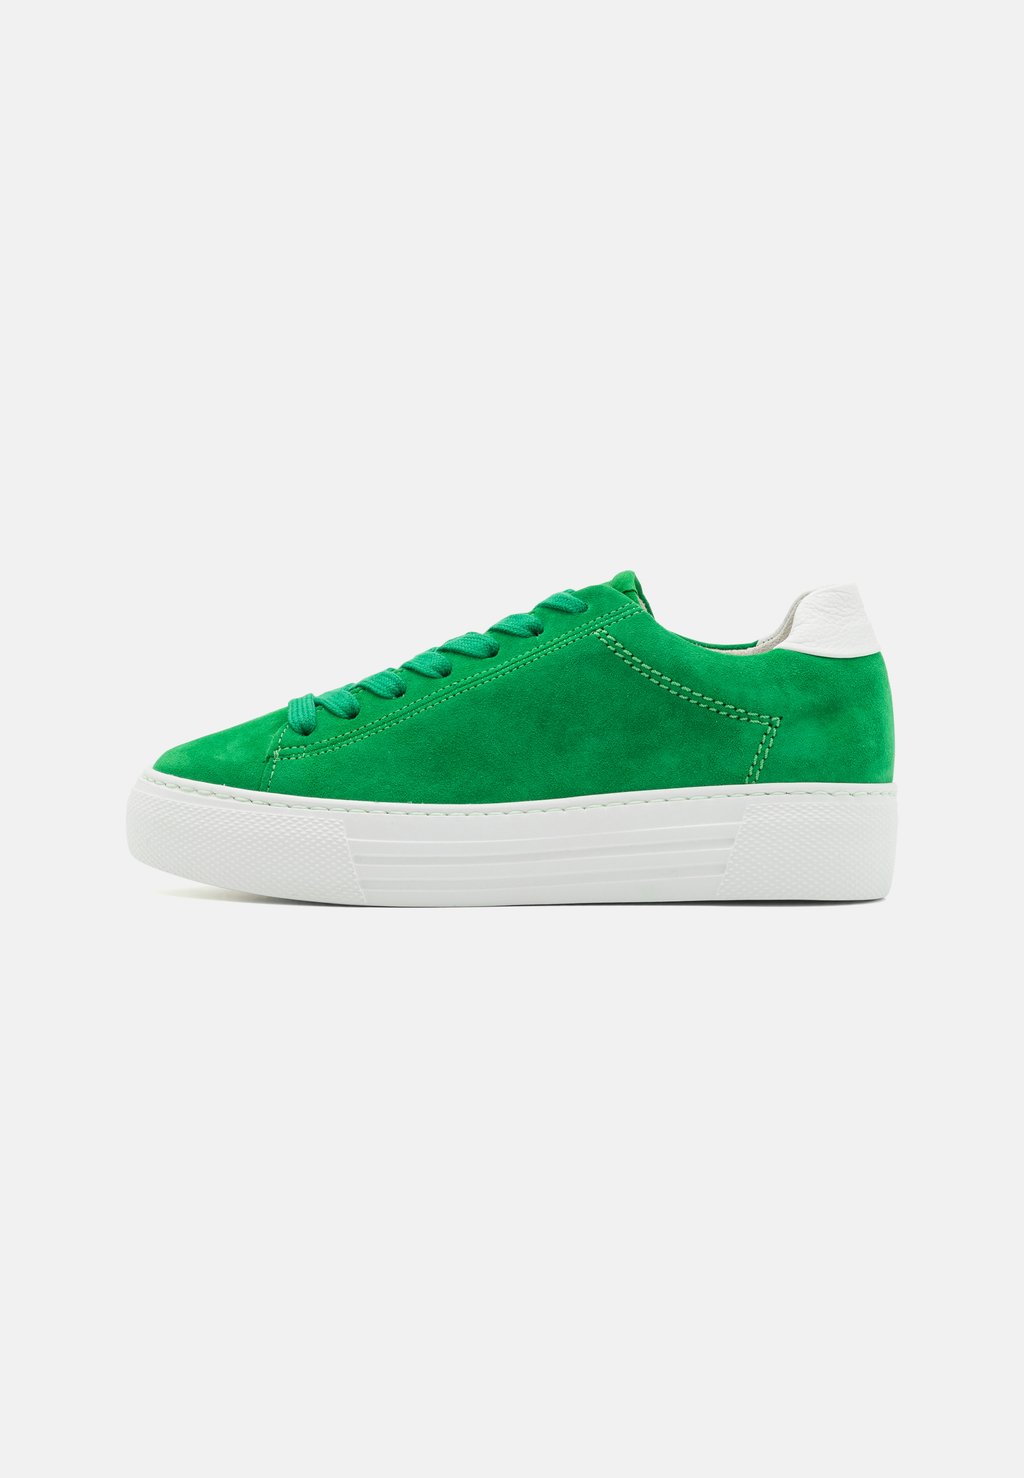 Низкие кроссовки Gabor Comfort, зеленые низкие кроссовки gabor comfort weiß